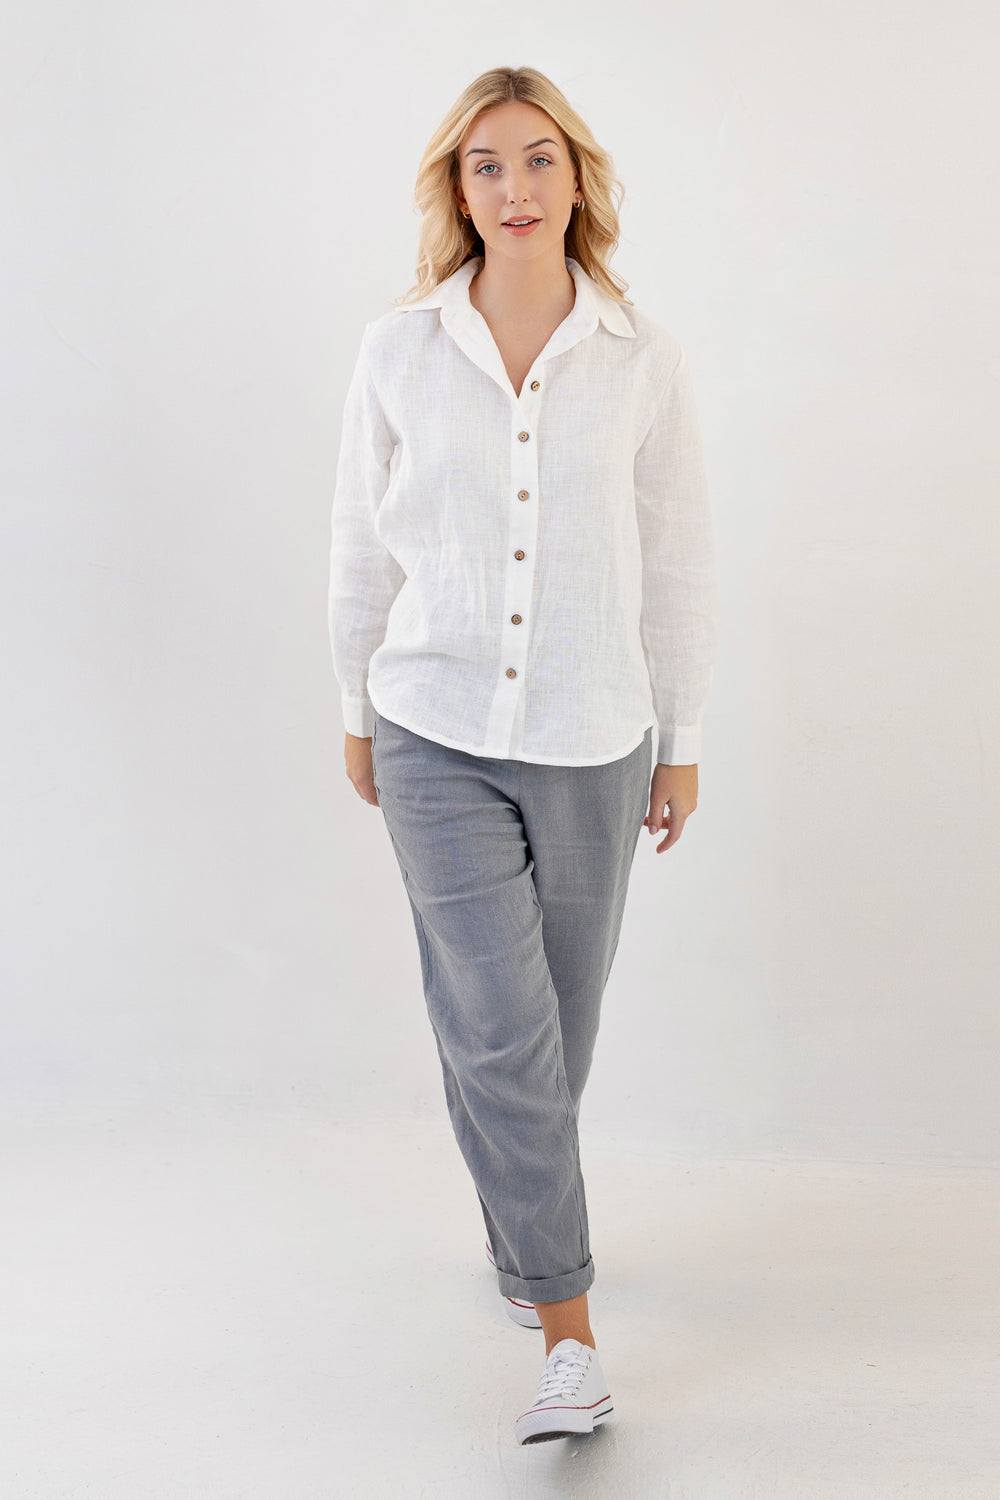 White Linen Buttoned Shirt Lulu 2 - Daily Linen